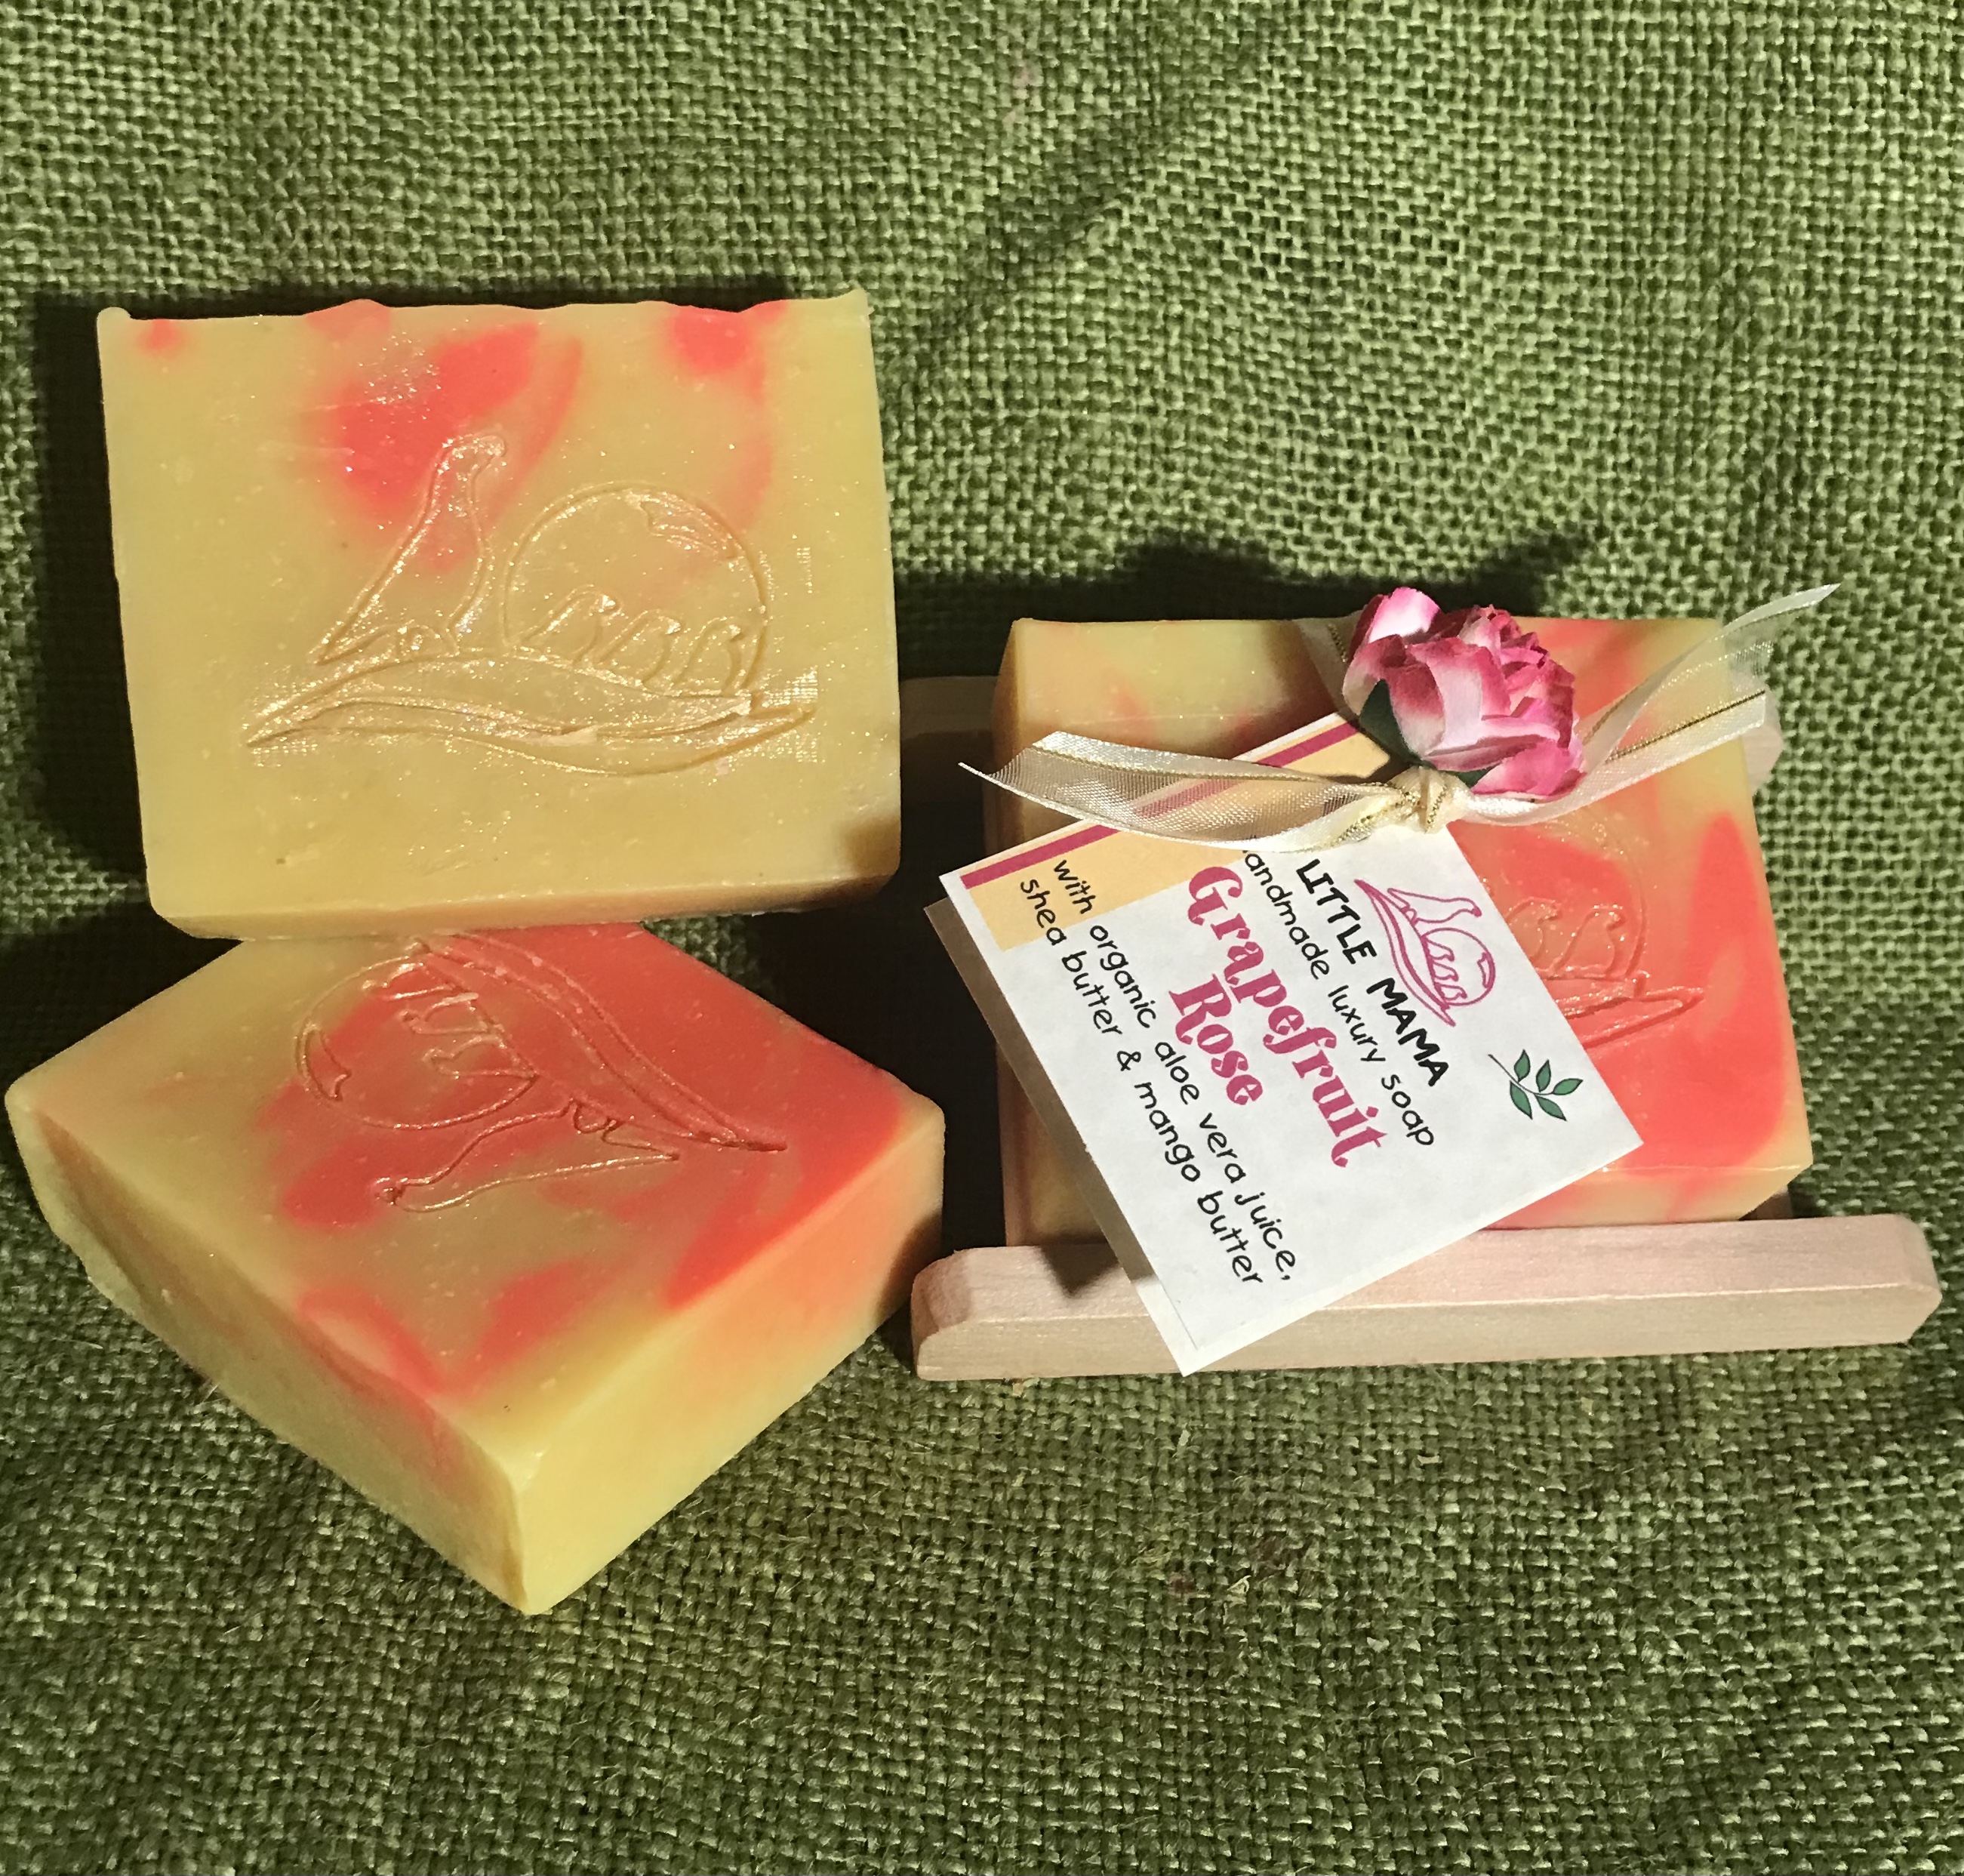 Grapefruit Rose Soap